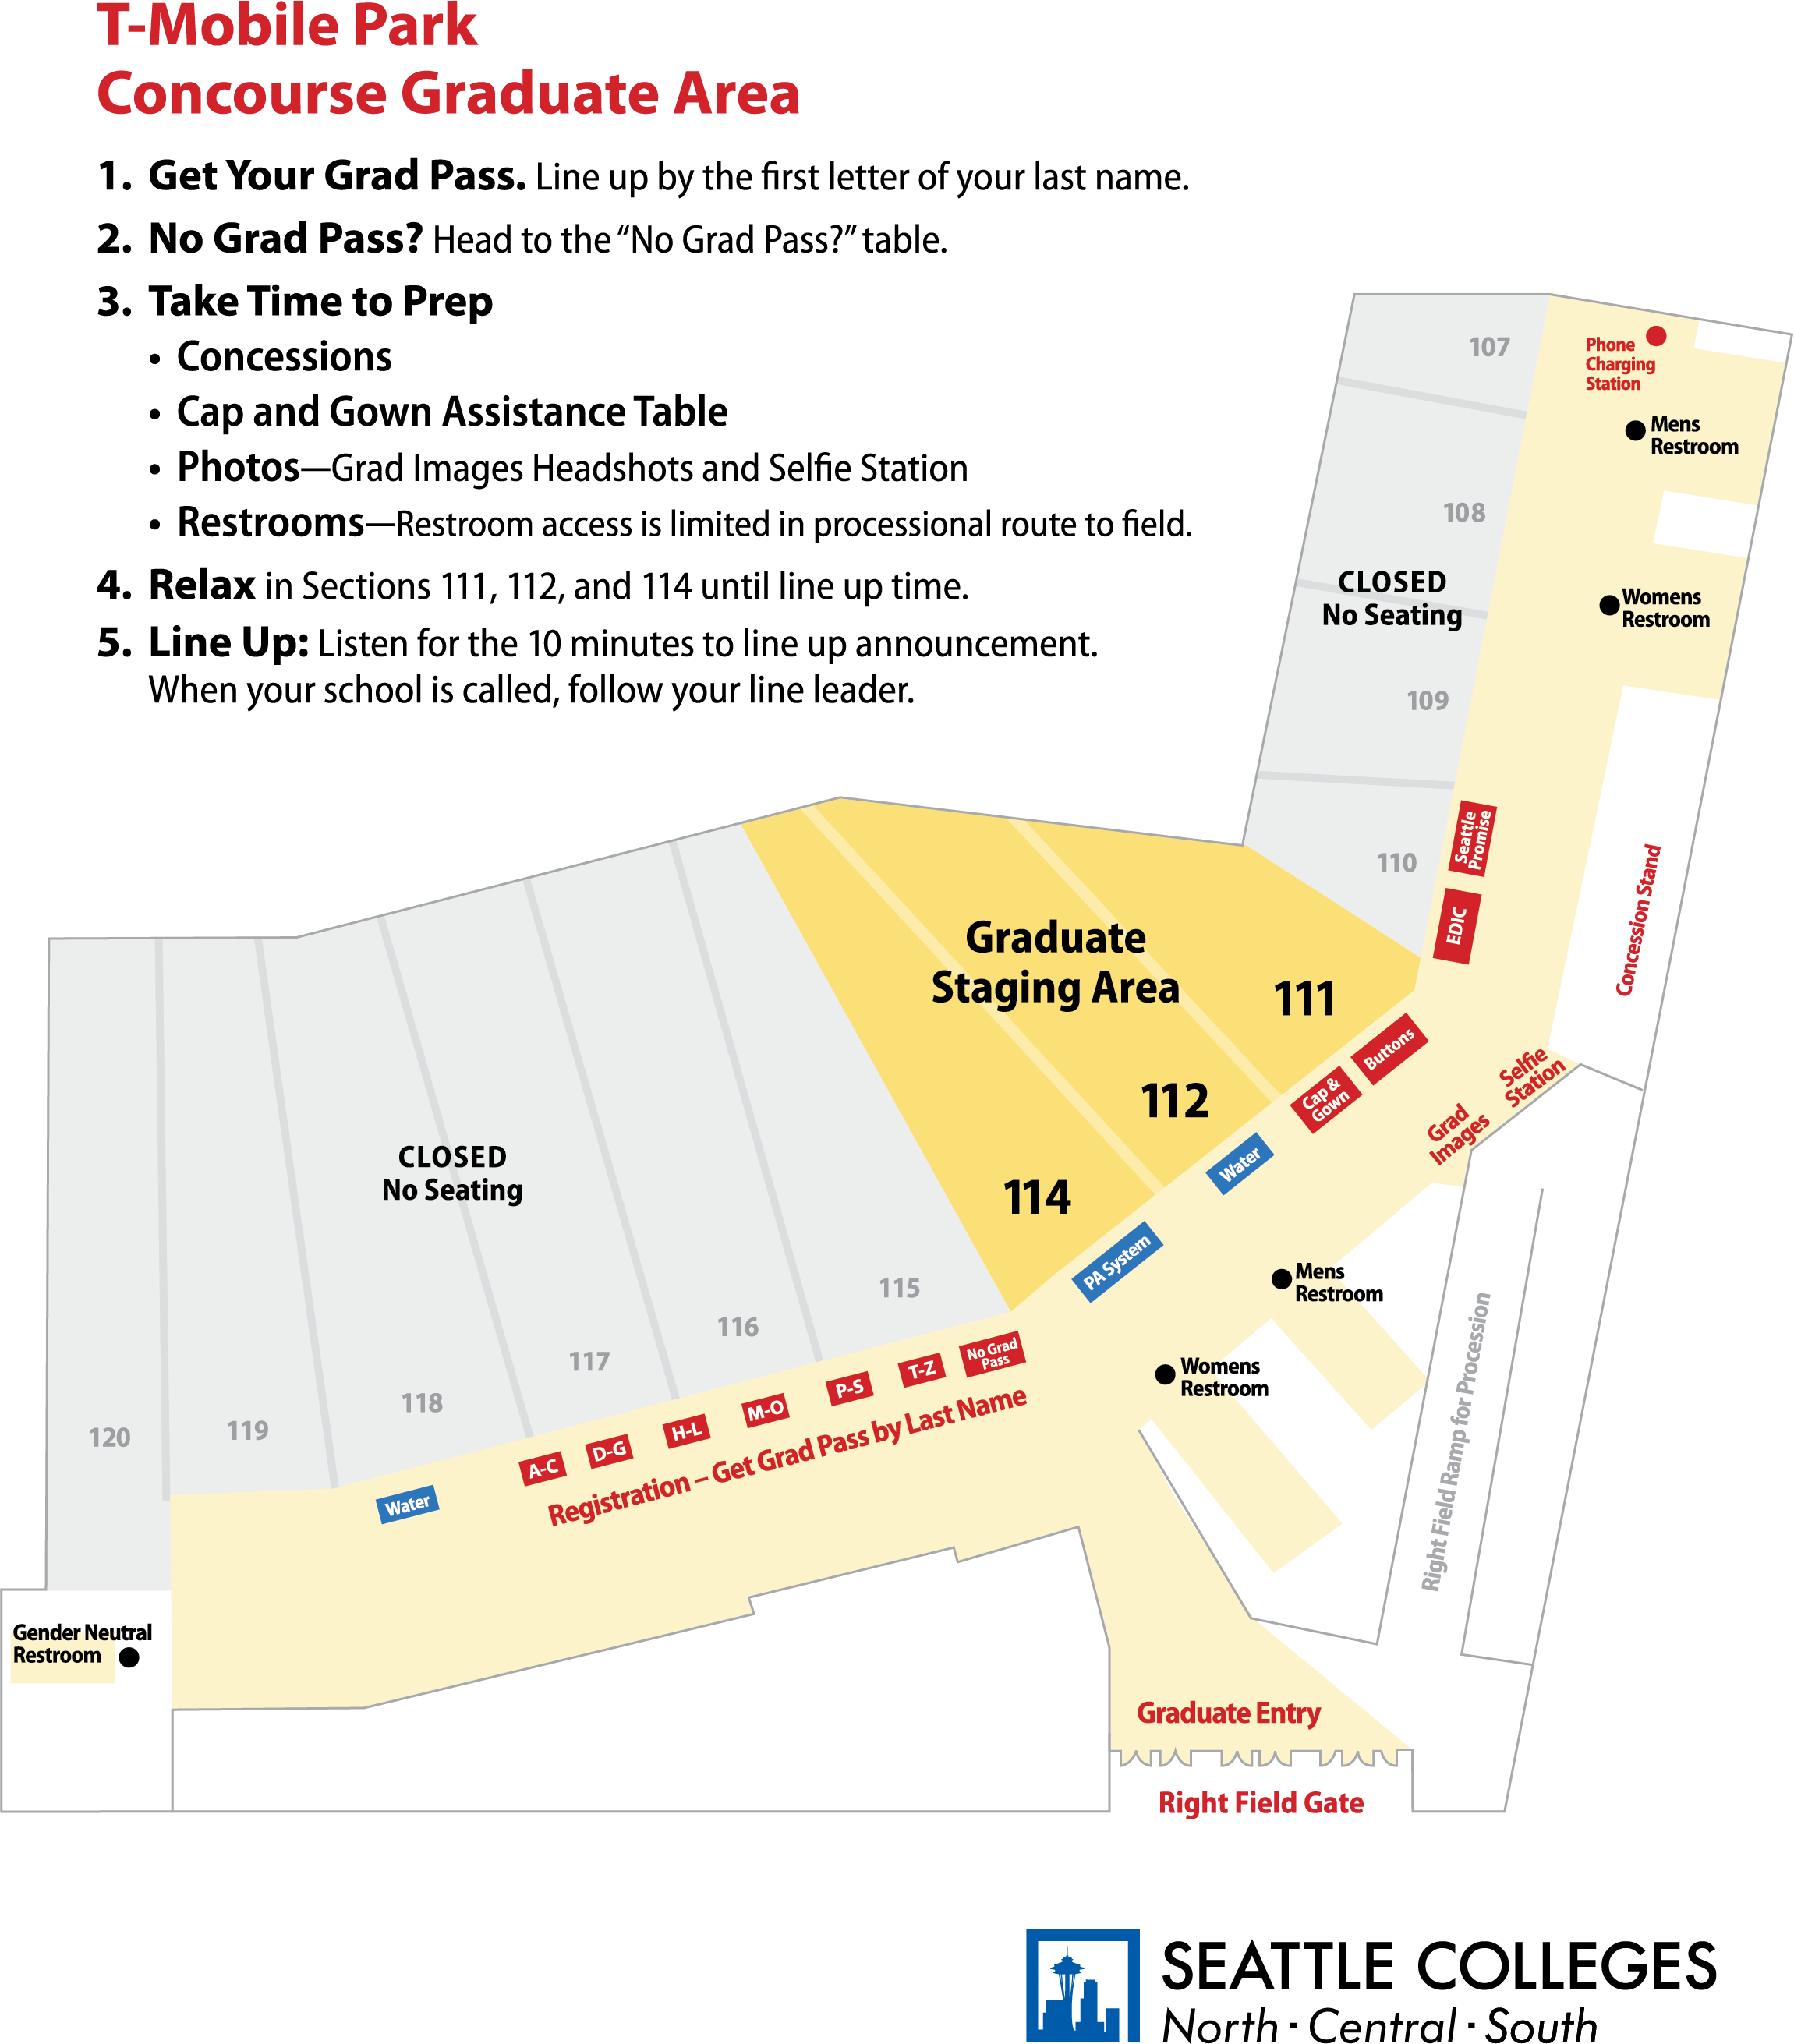 T-Mobile Park Concourse Grad Area Map